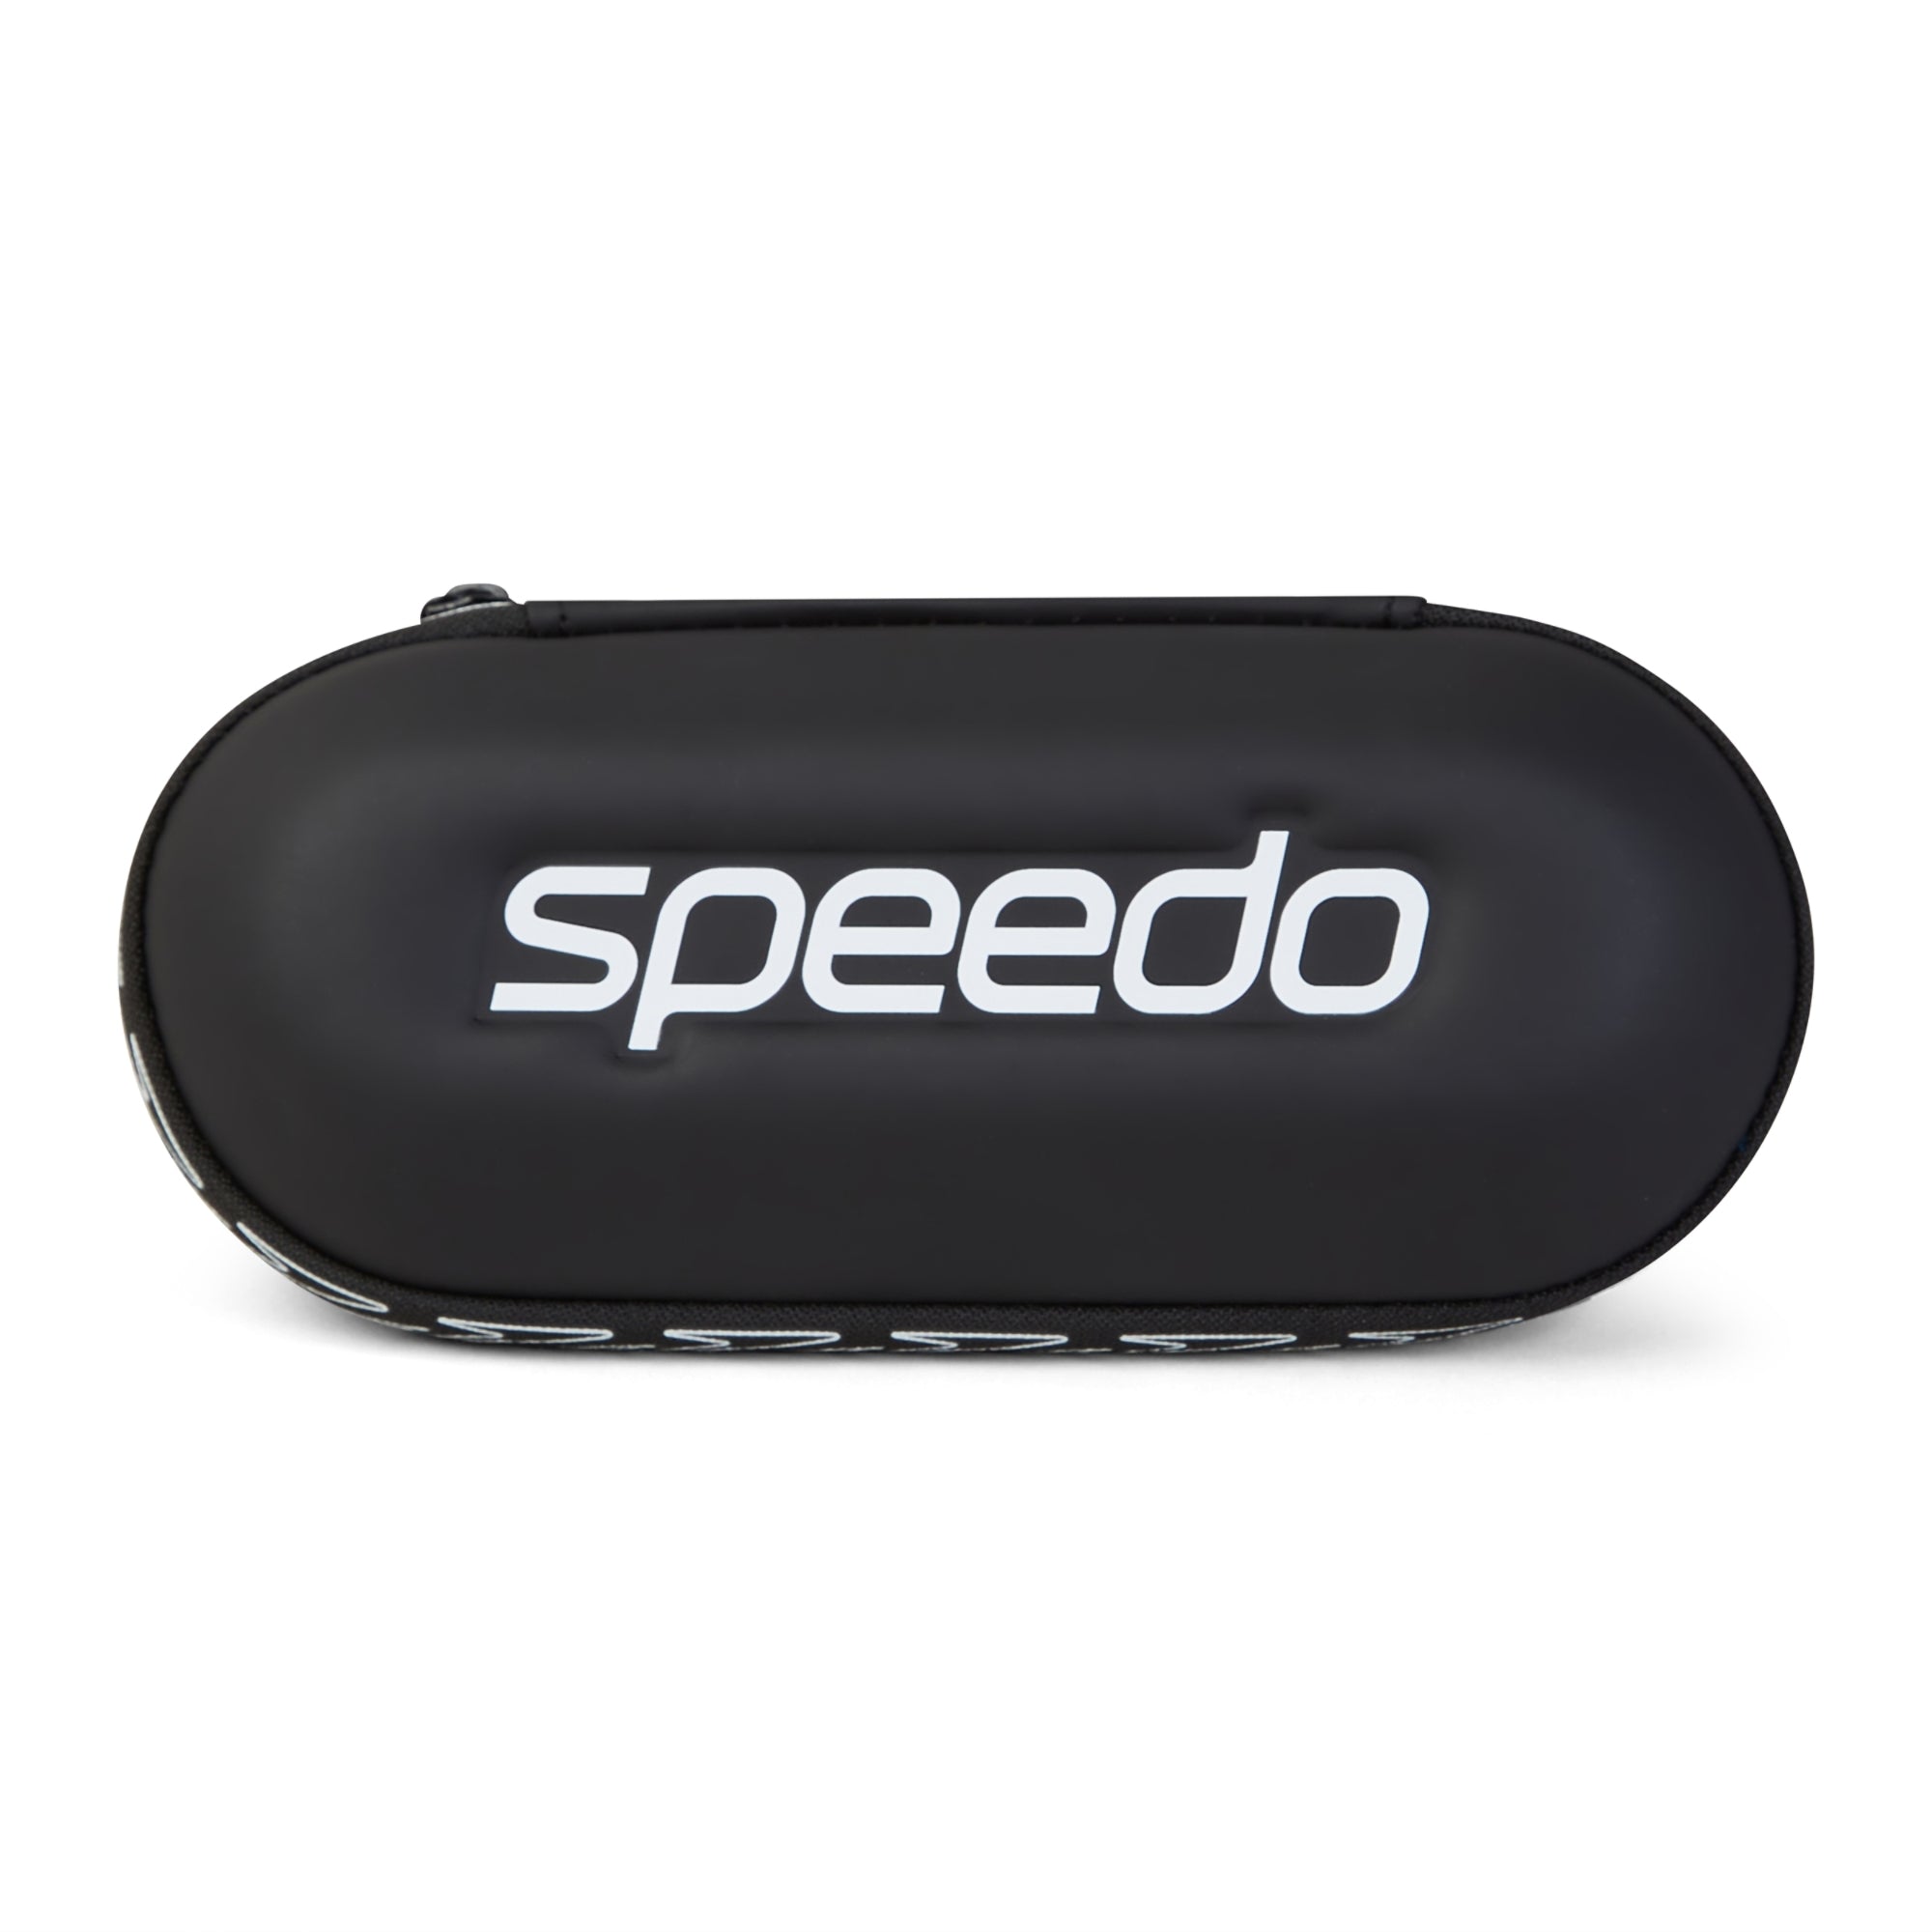 Speedo Swim Goggle Storage Case Black